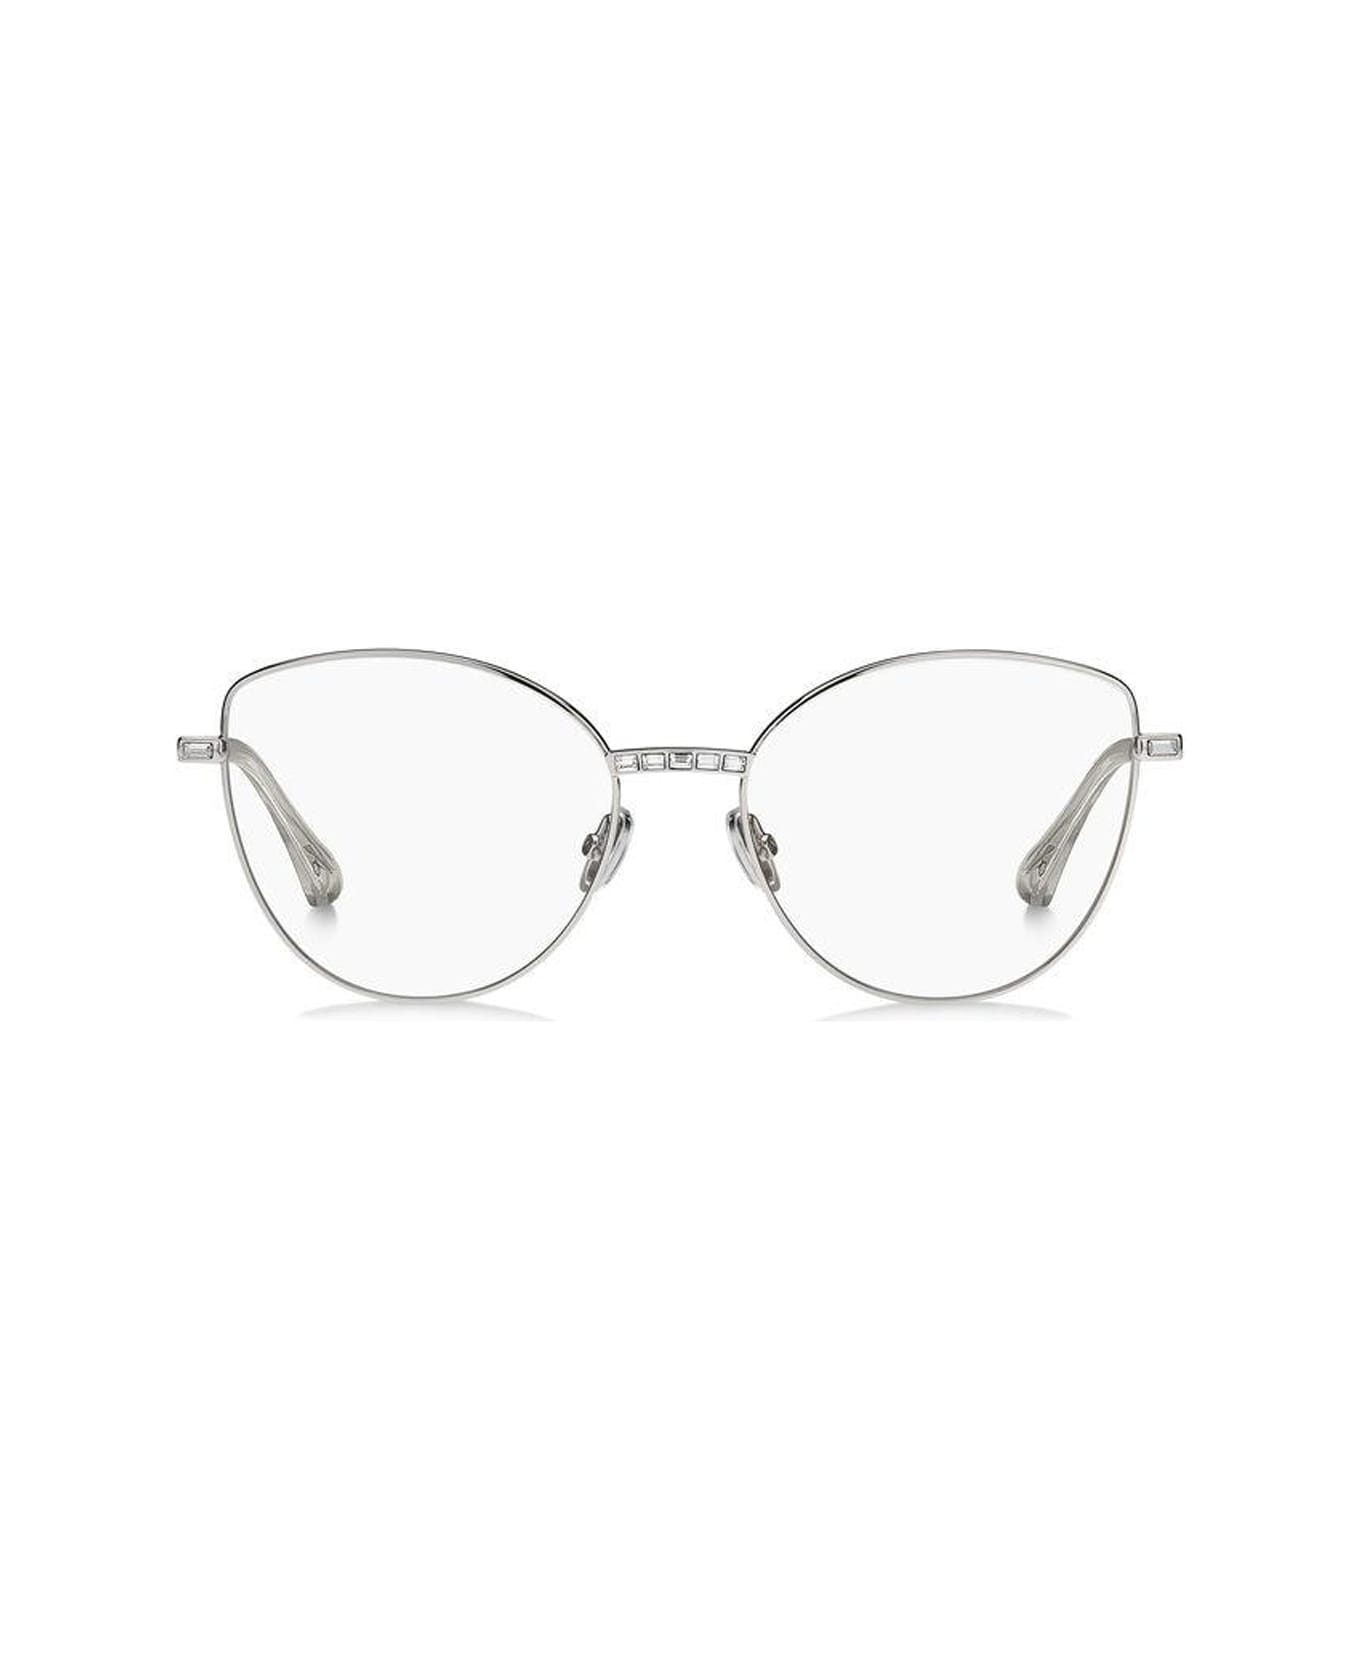 Jimmy Choo Eyewear Jc285 010/17 Glasses - Argento アイウェア